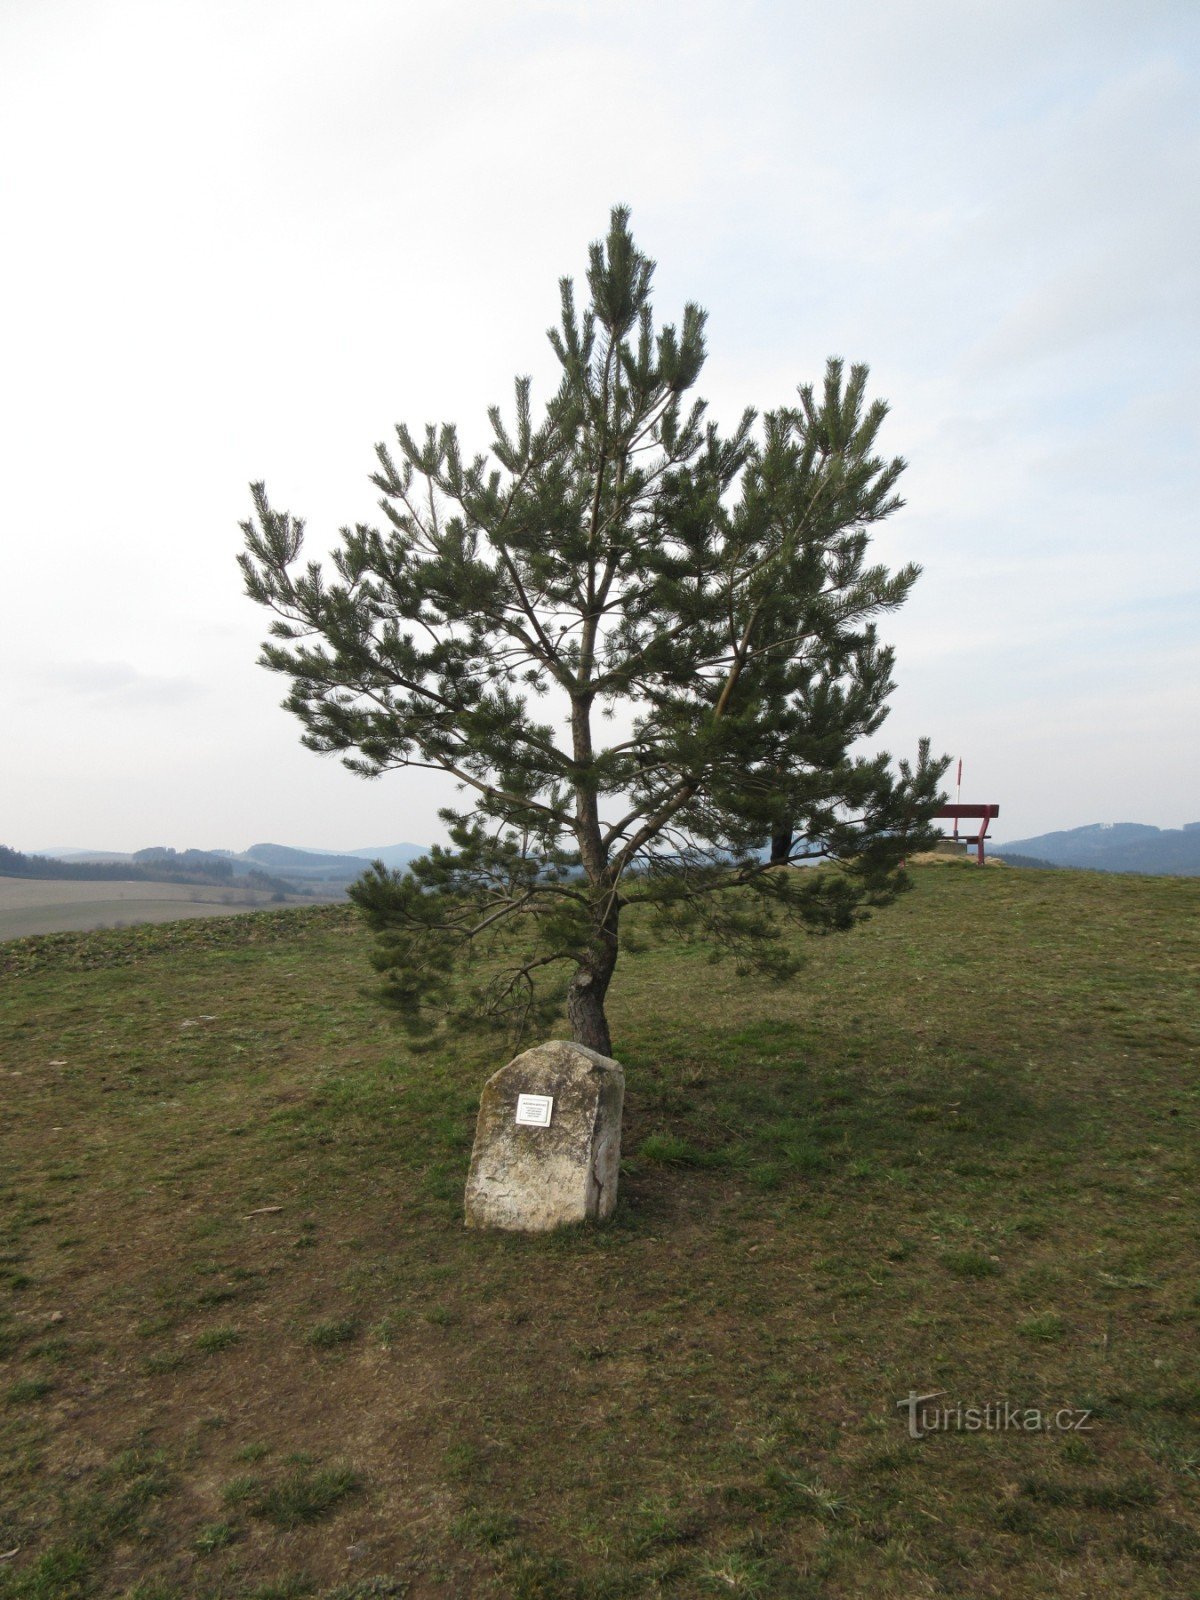 Vítochov – church and Munzar's pine